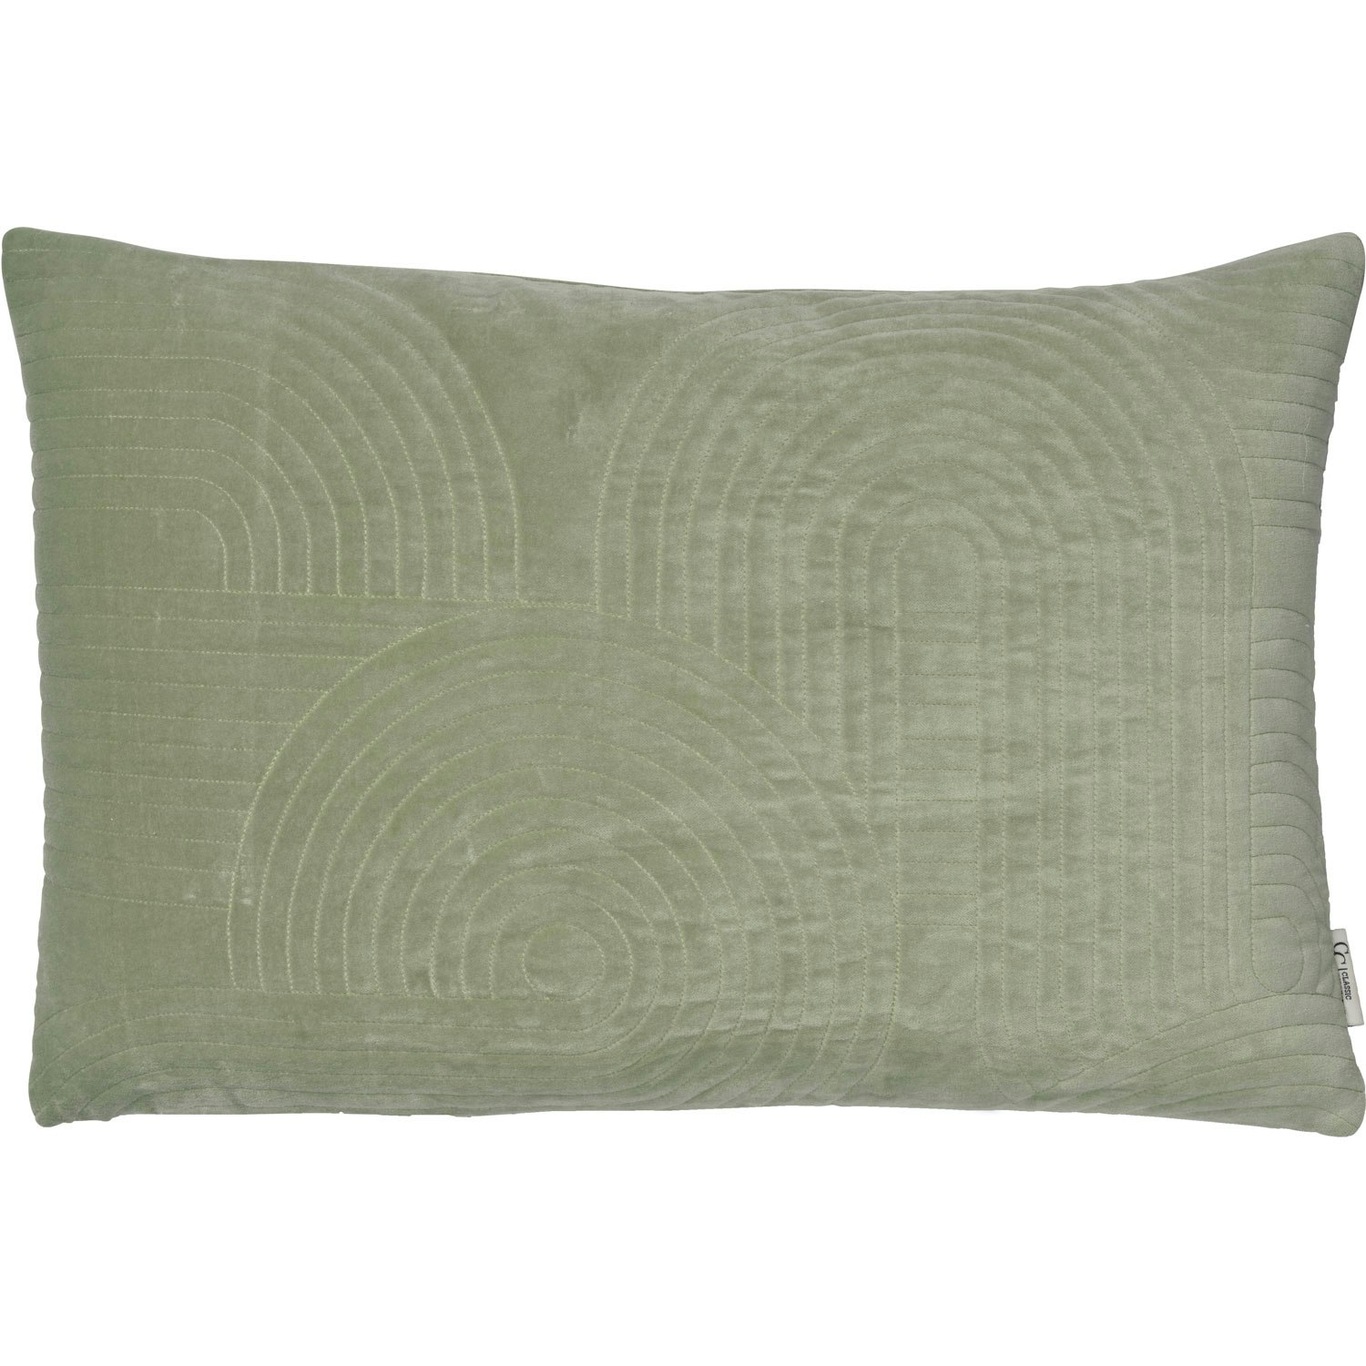 Arch Cushion Cover 40x60 cm, Tea